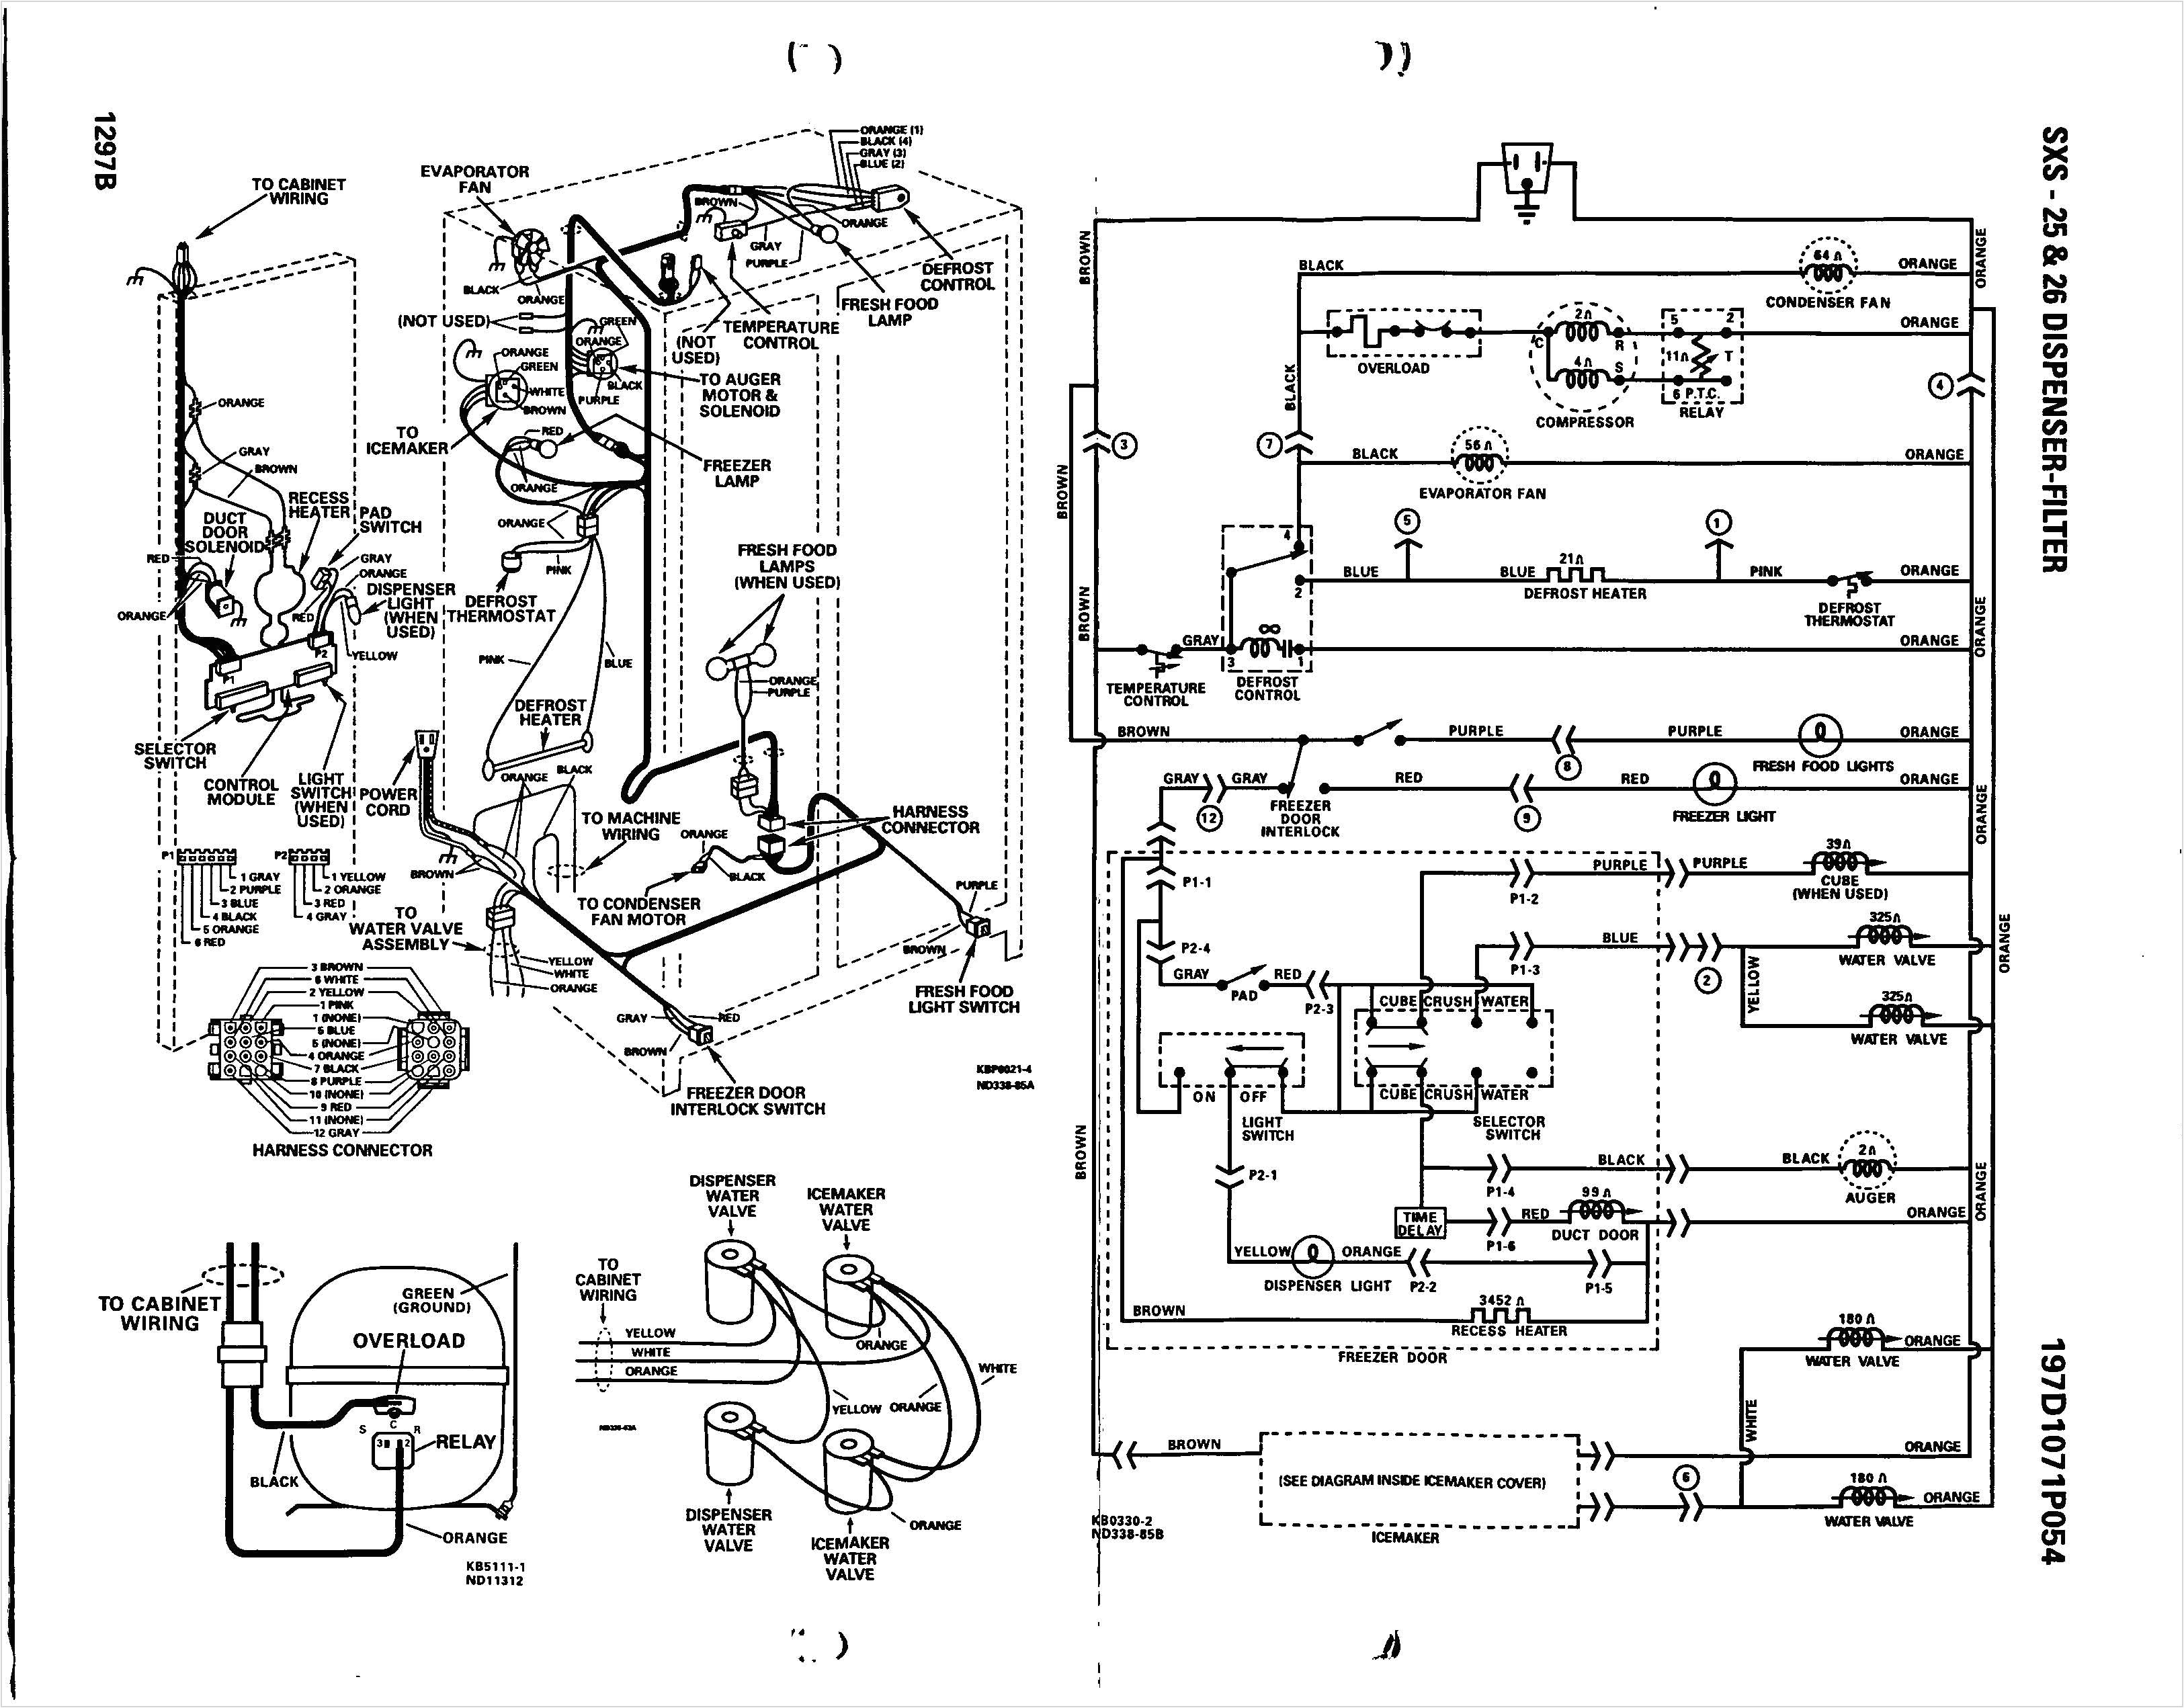 ge motor wiring diagram 5kcr49sn2137x wiring diagram technic ge motor wiring diagram 5kcr49sn2137x